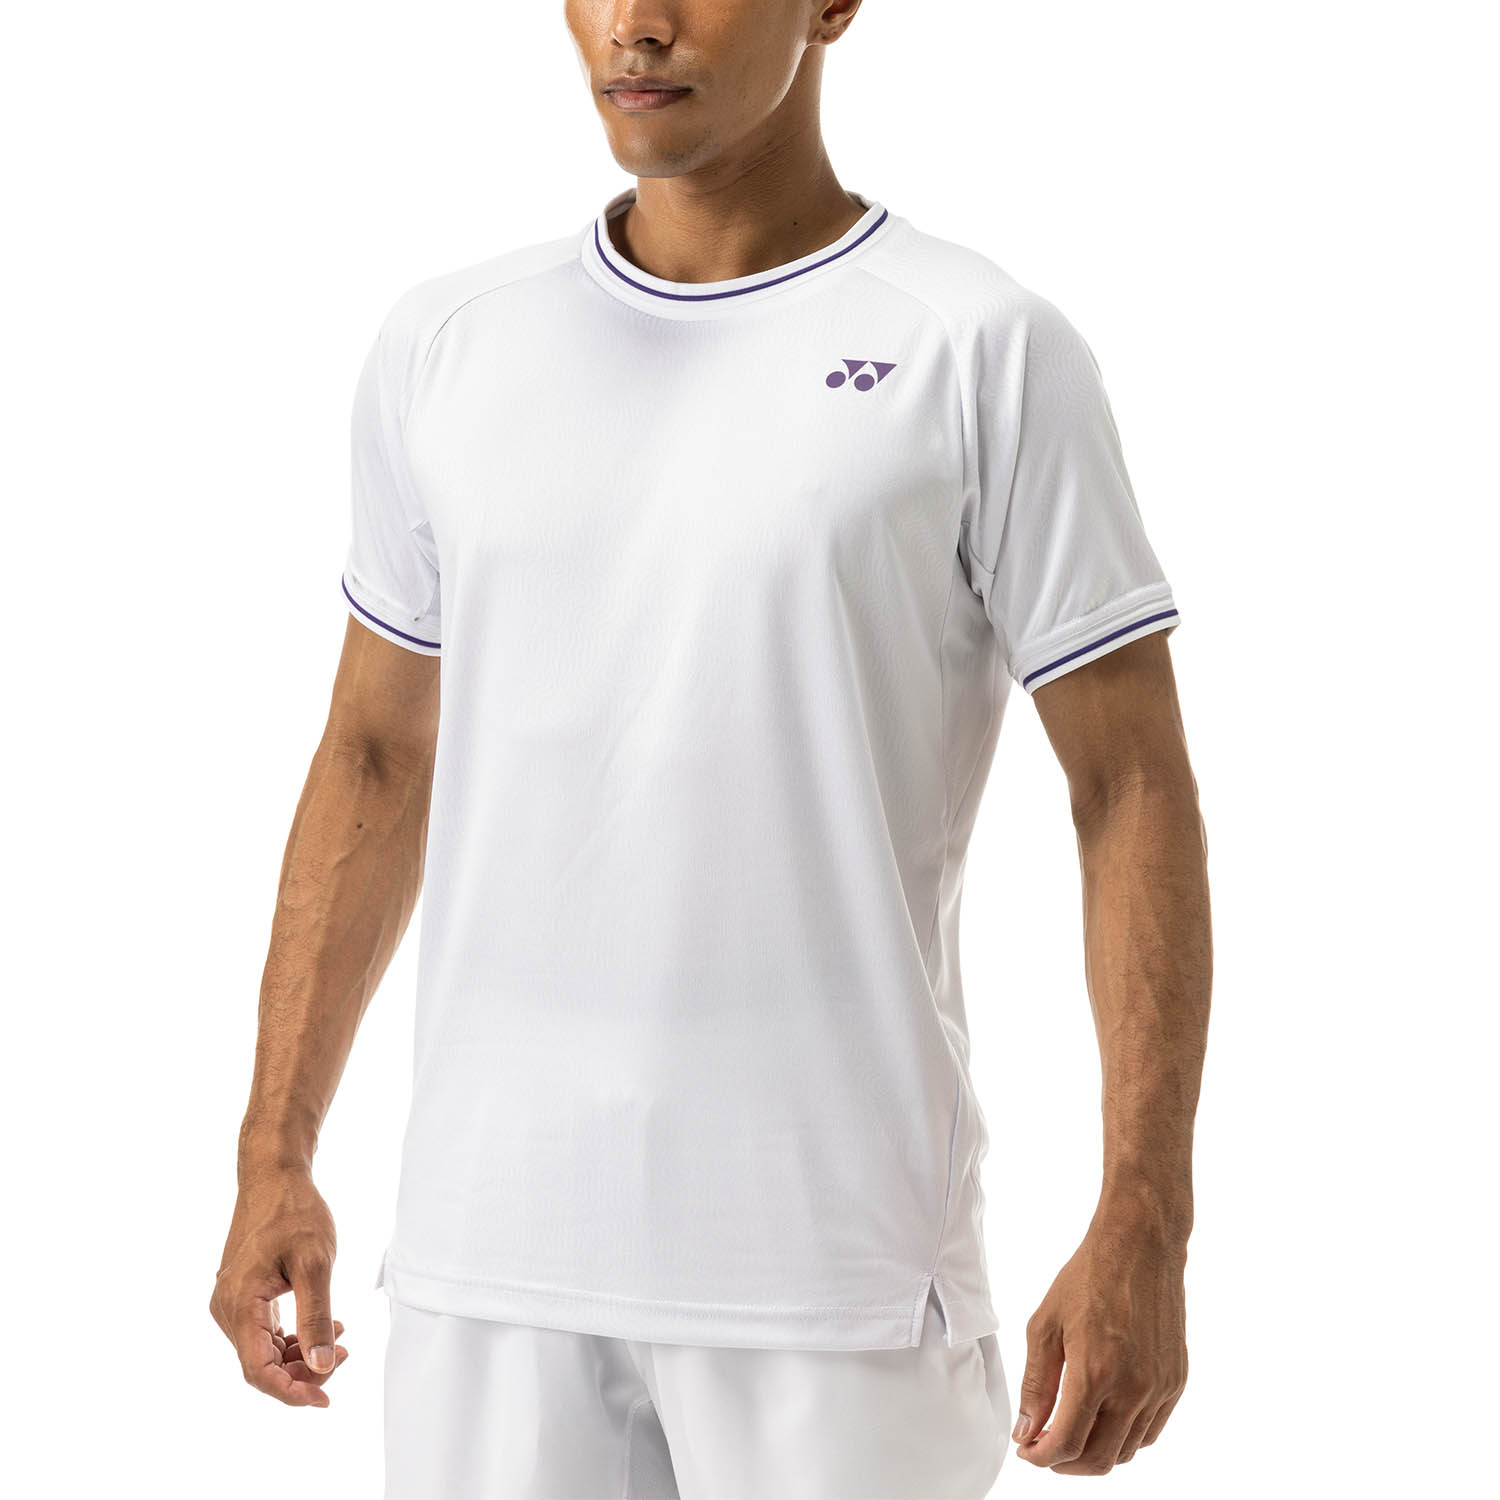 Yonex London T-Shirt - White